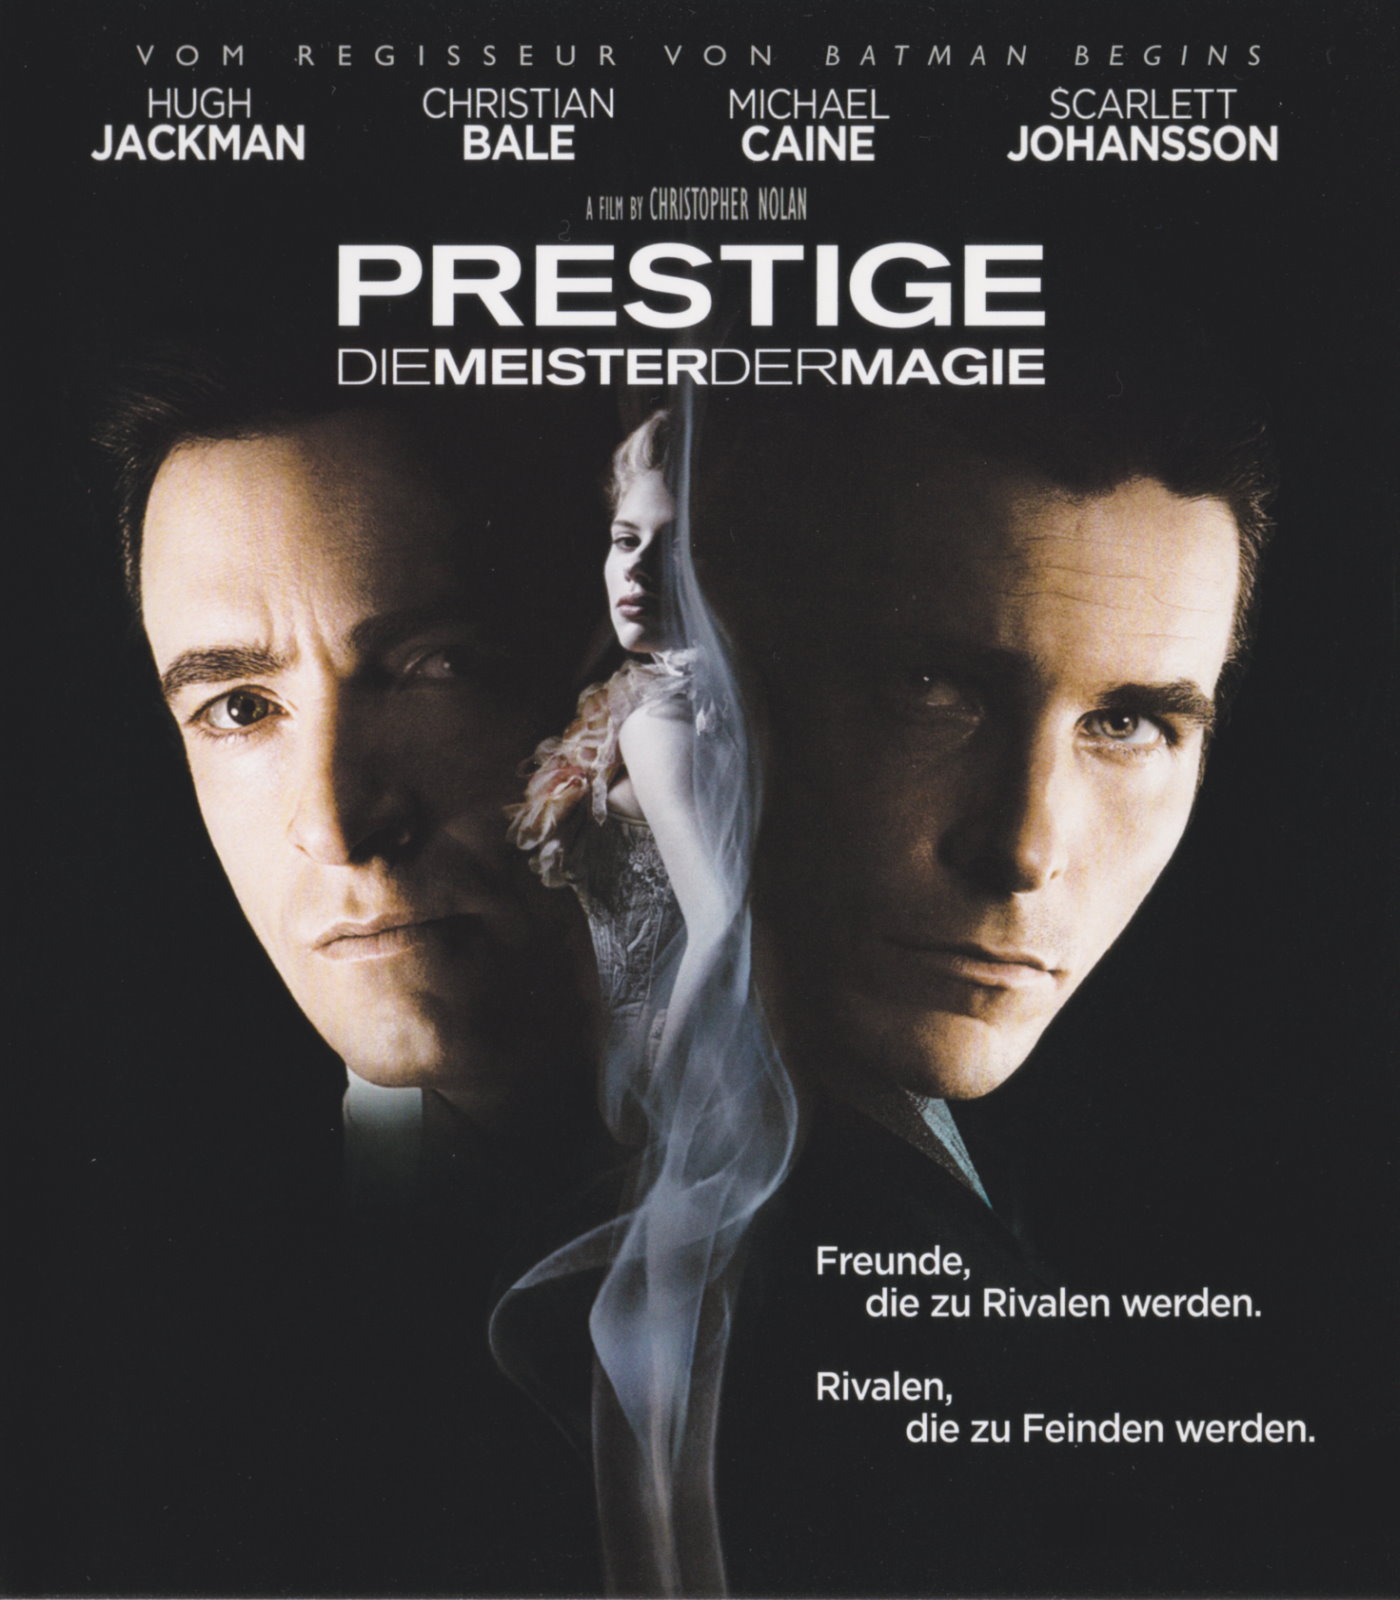 Cover - Prestige - Die Meister der Magie.jpg